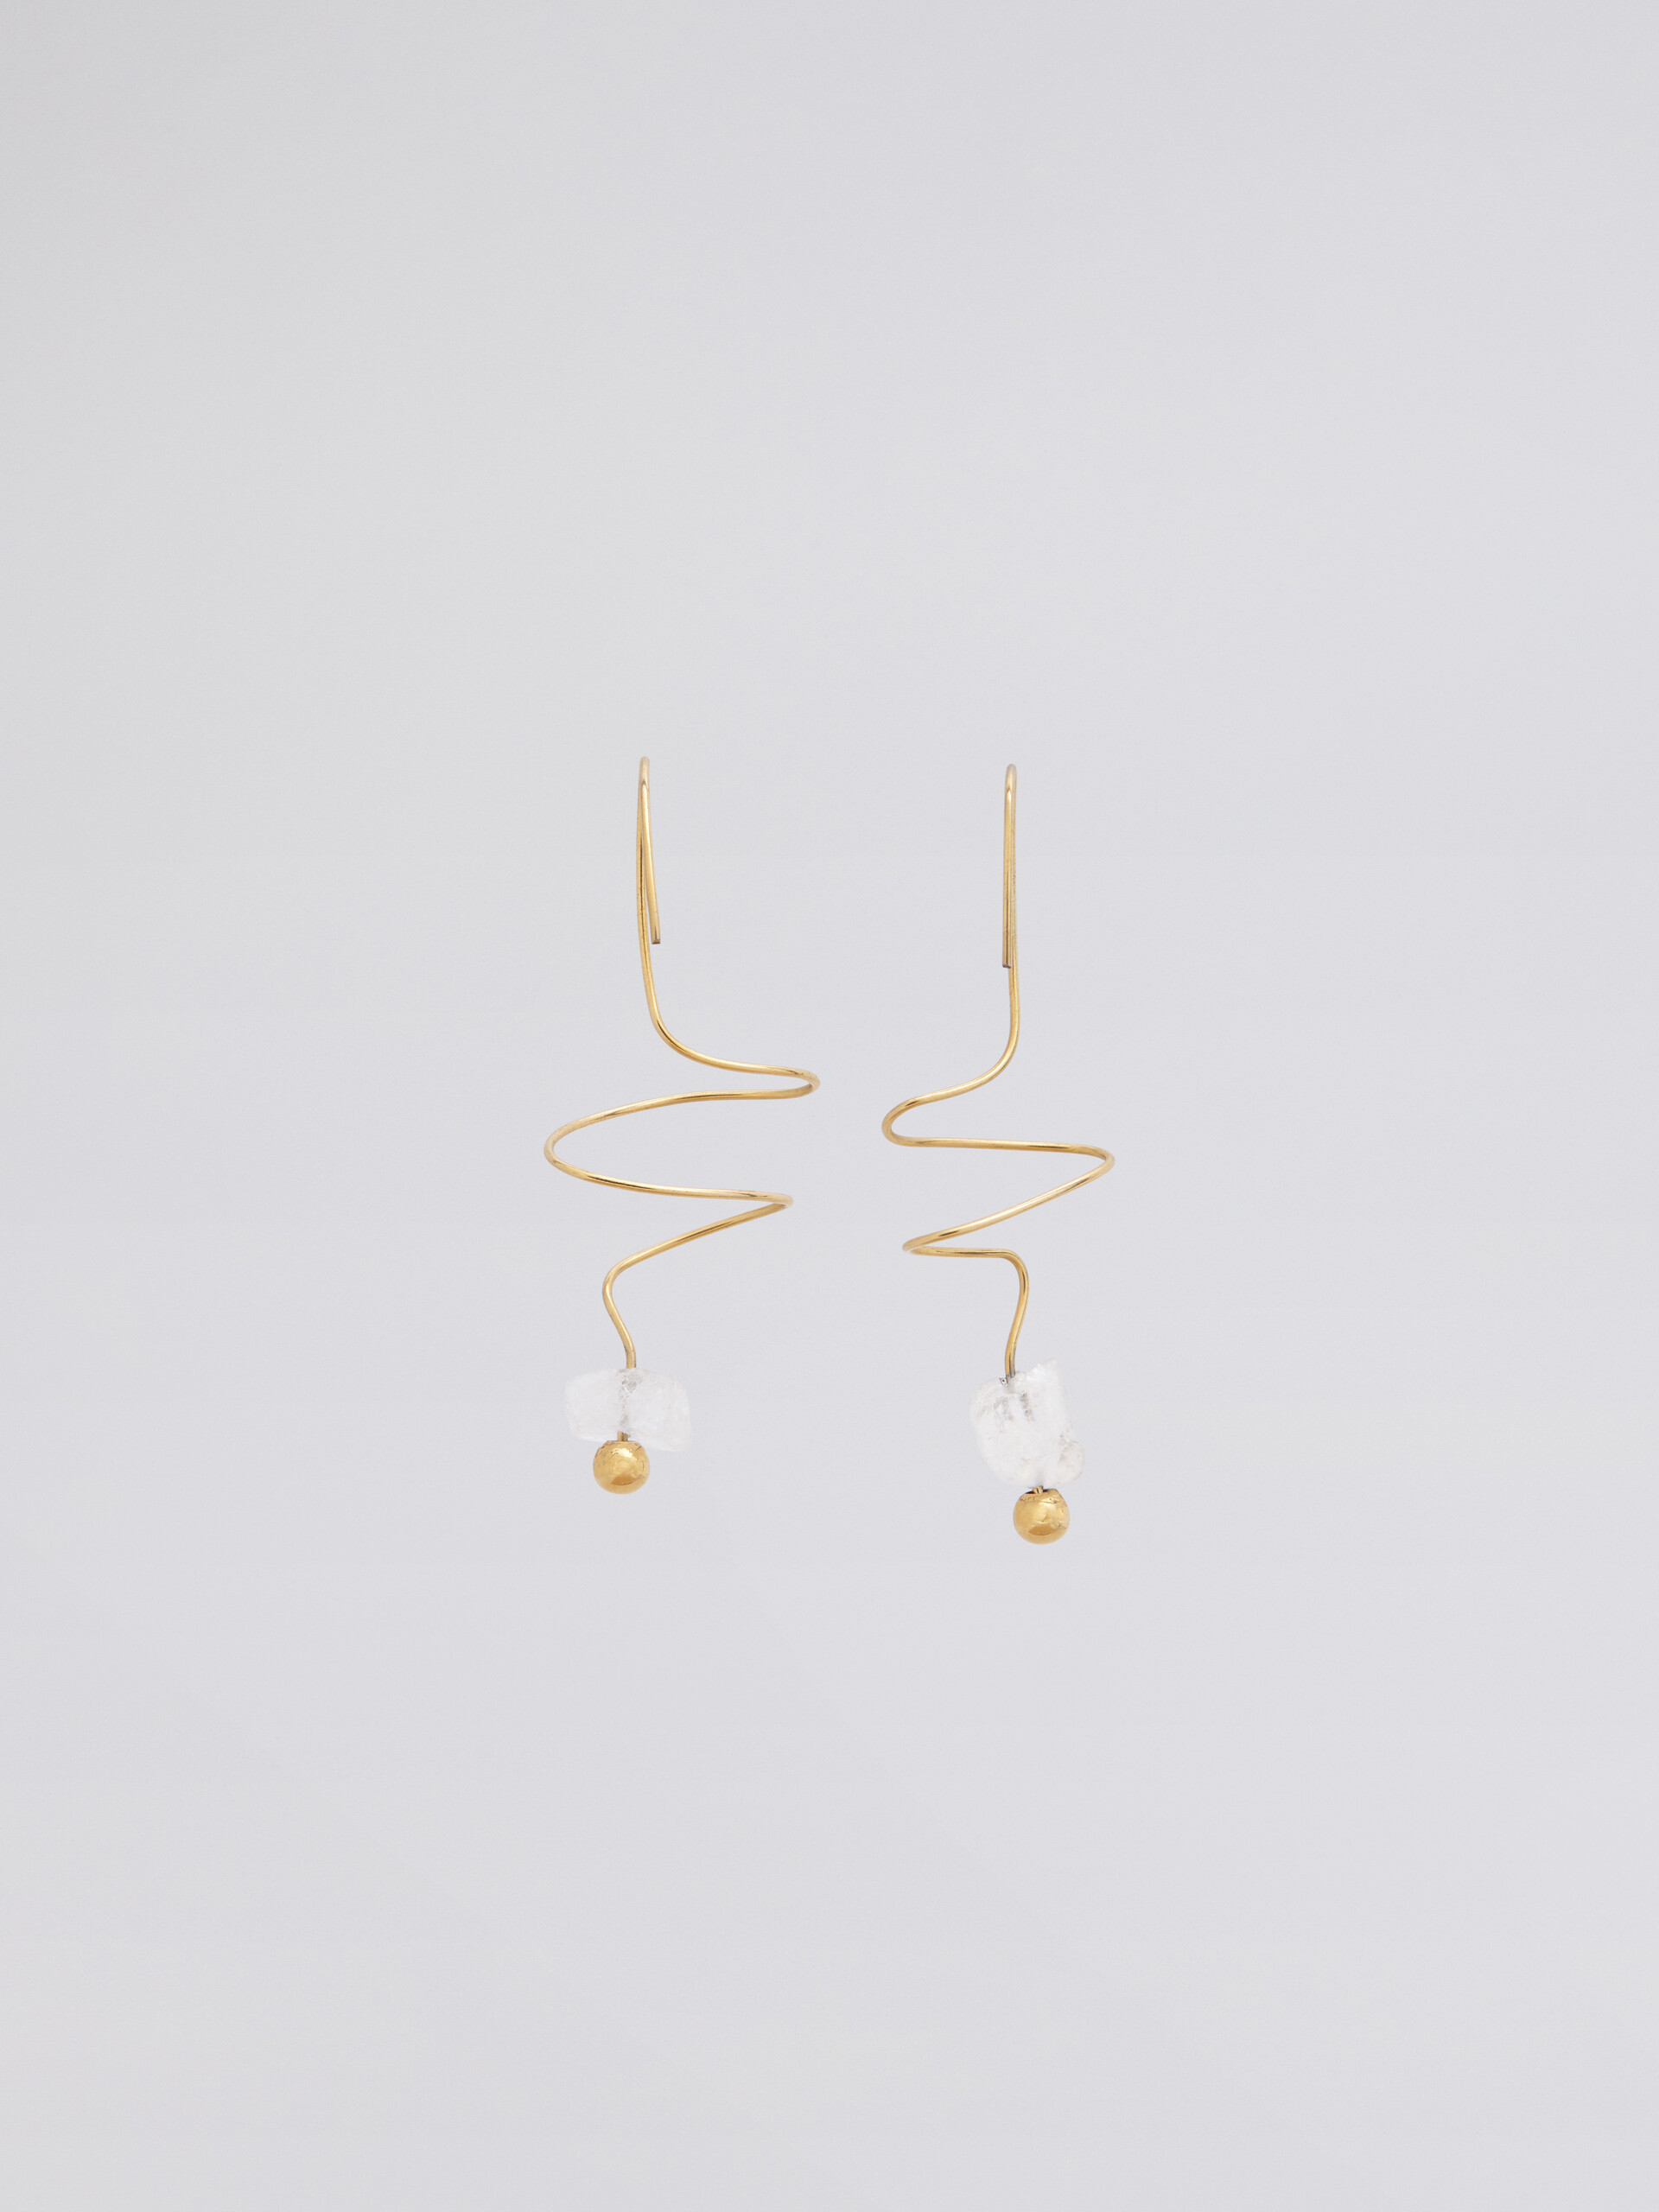 TEARS hook earrings in gold-tone brass and quartz - Earrings - Image 2